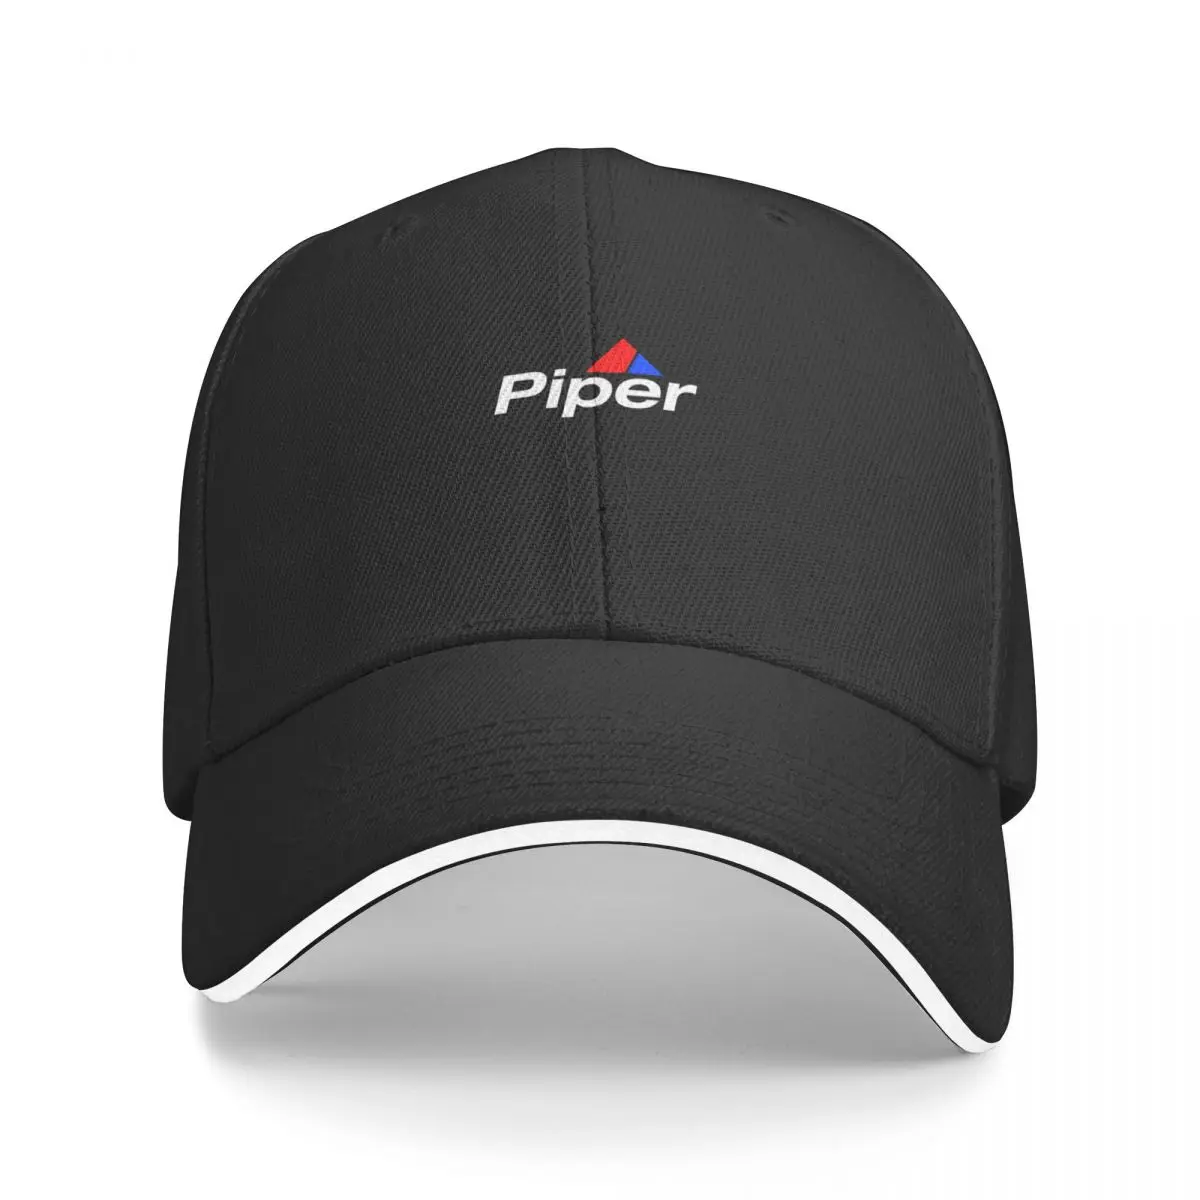 

New BEST SELLER - Piper Aircraft Merchandise Essential Baseball Cap beach hat Christmas Hats Male Cap Women's